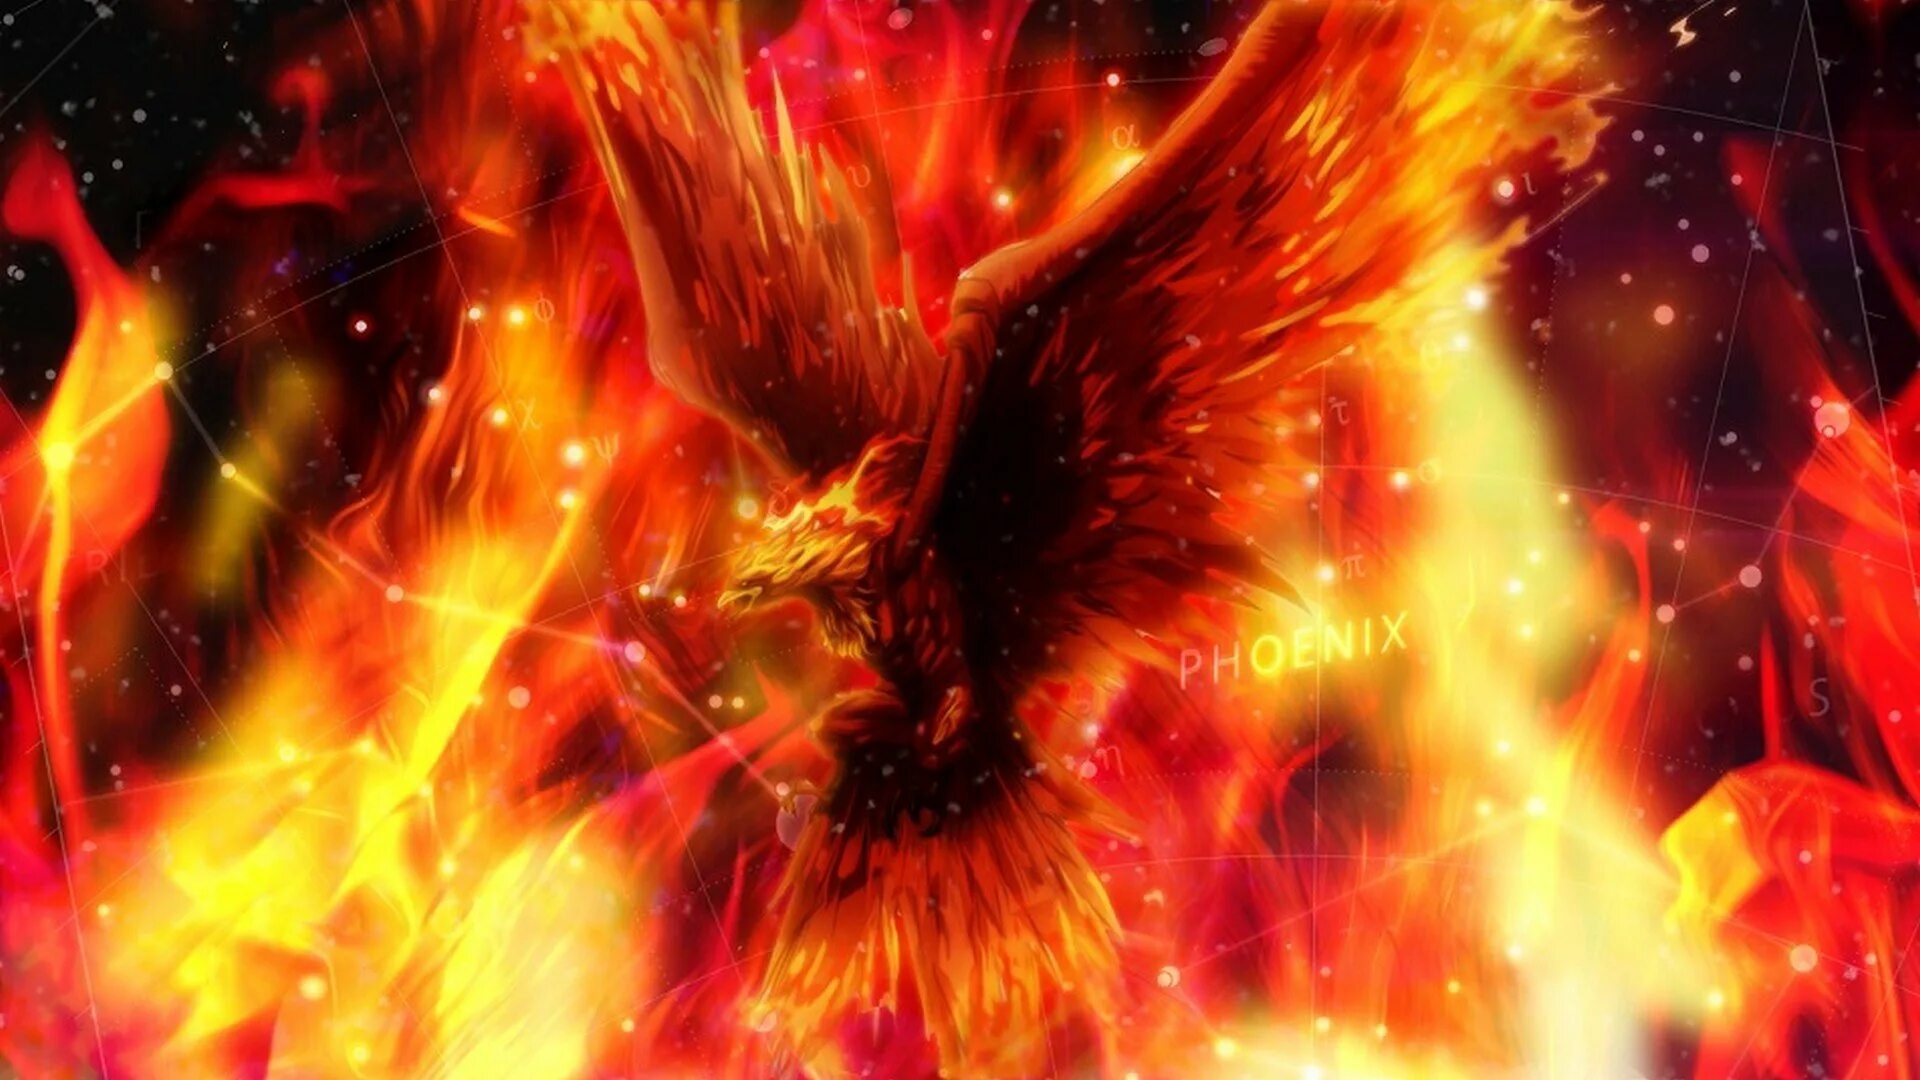 Огня задора. Огненный Сокол Рарог. Рарог дух огня. Птица Феникс Возрождение из пепла.